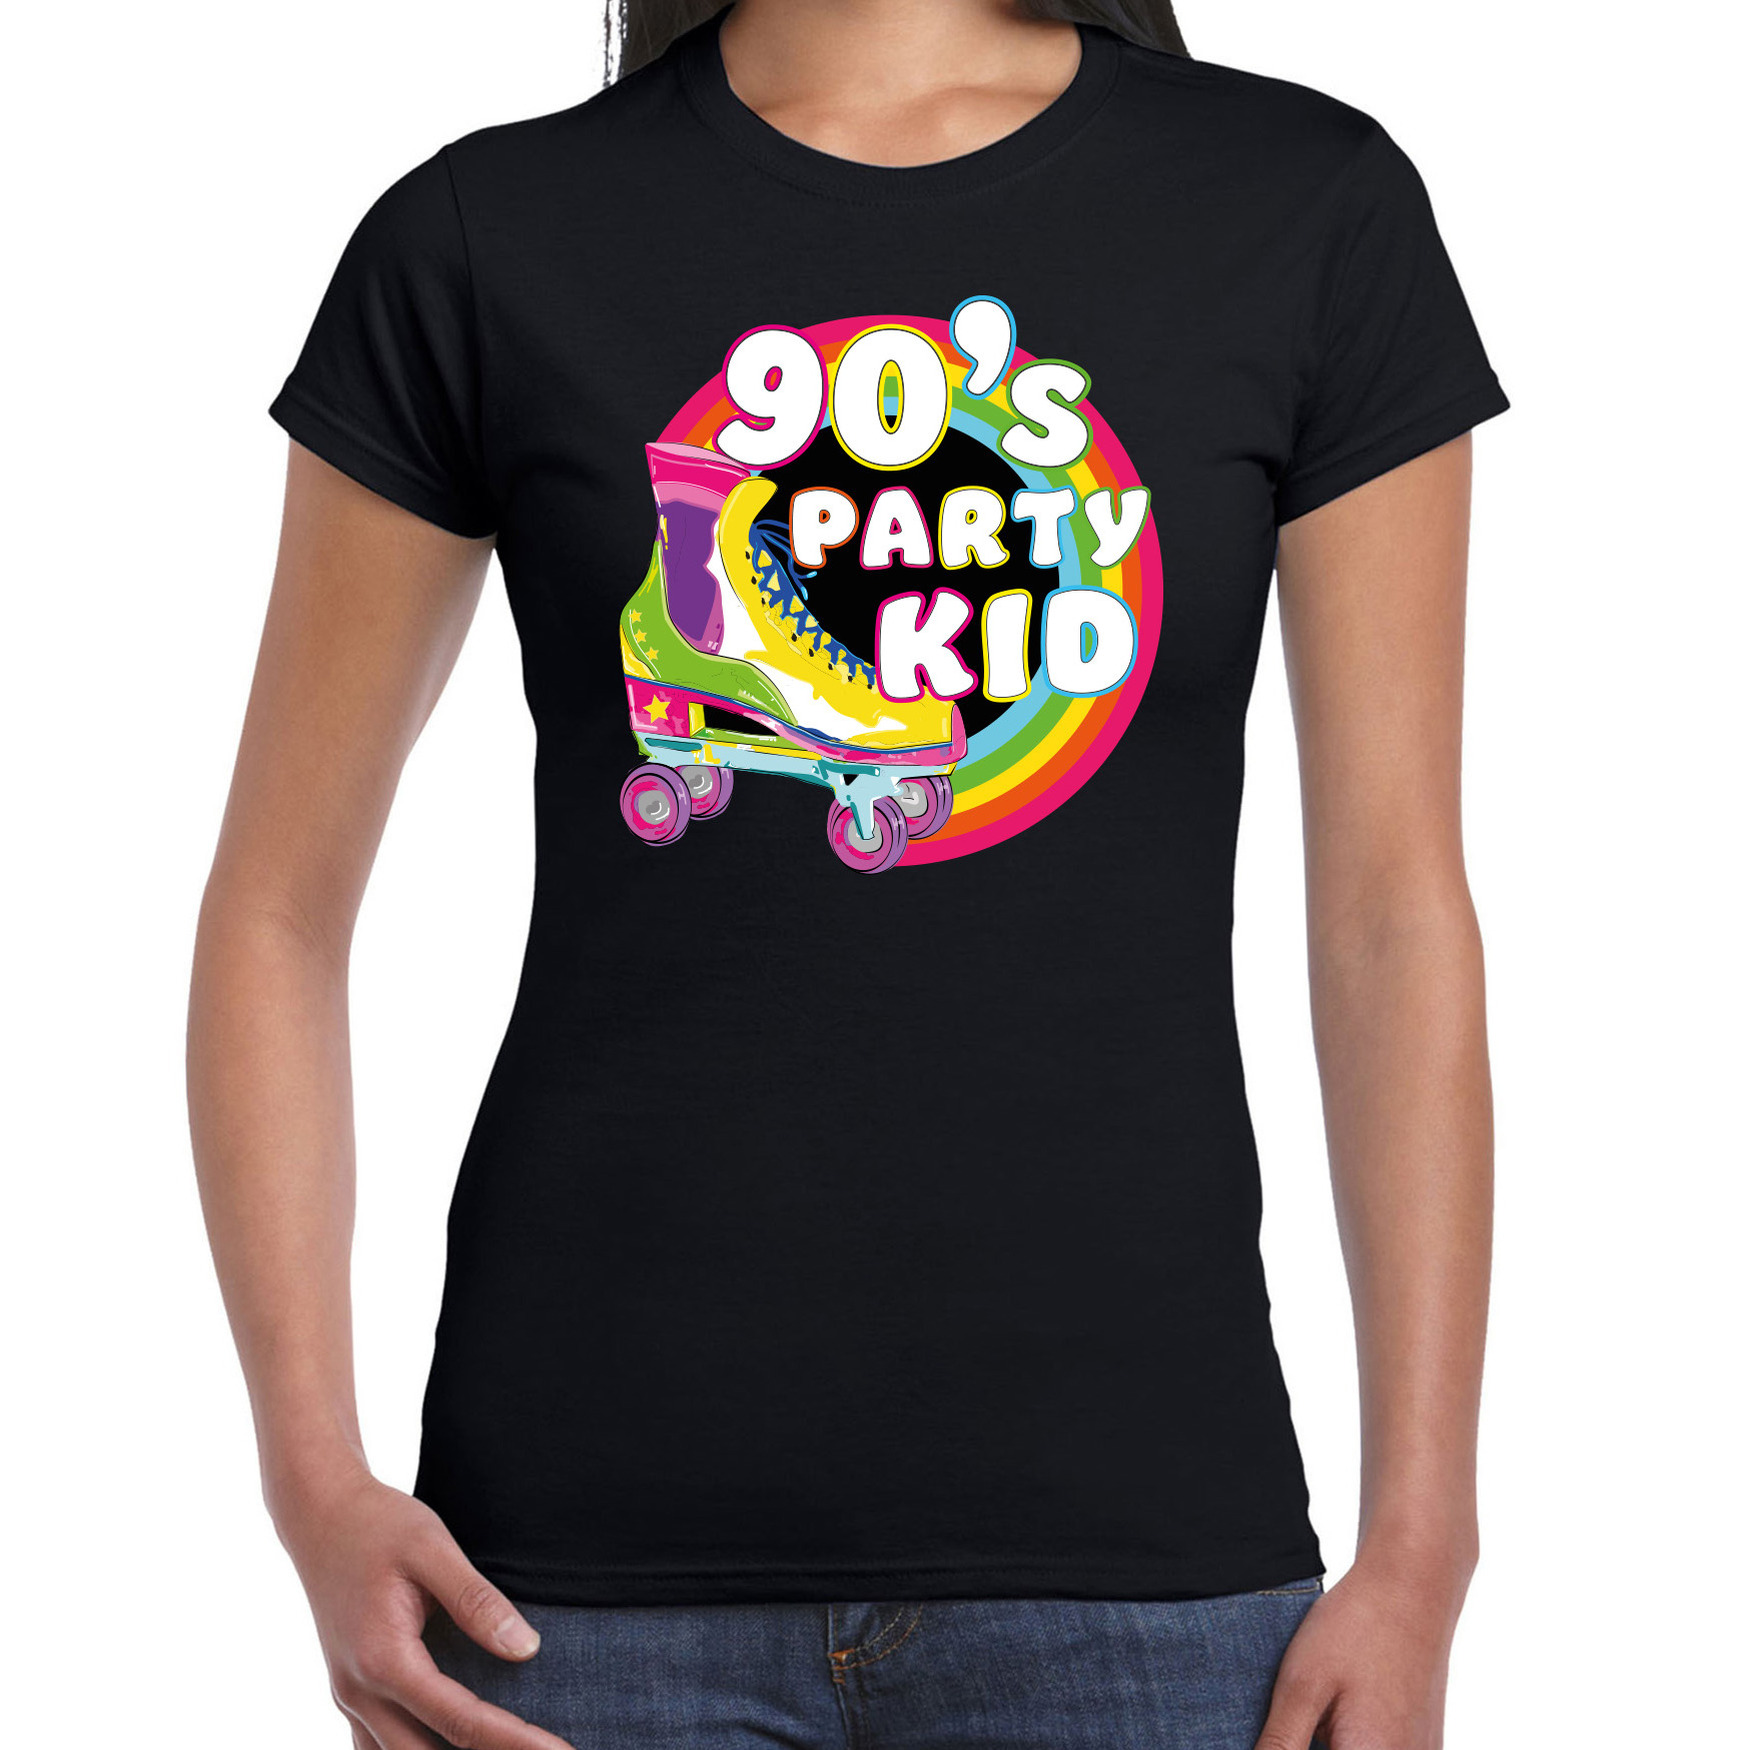 Nineties party verkleed t-shirt dames jaren 90 feest outfit 90s party kid zwart